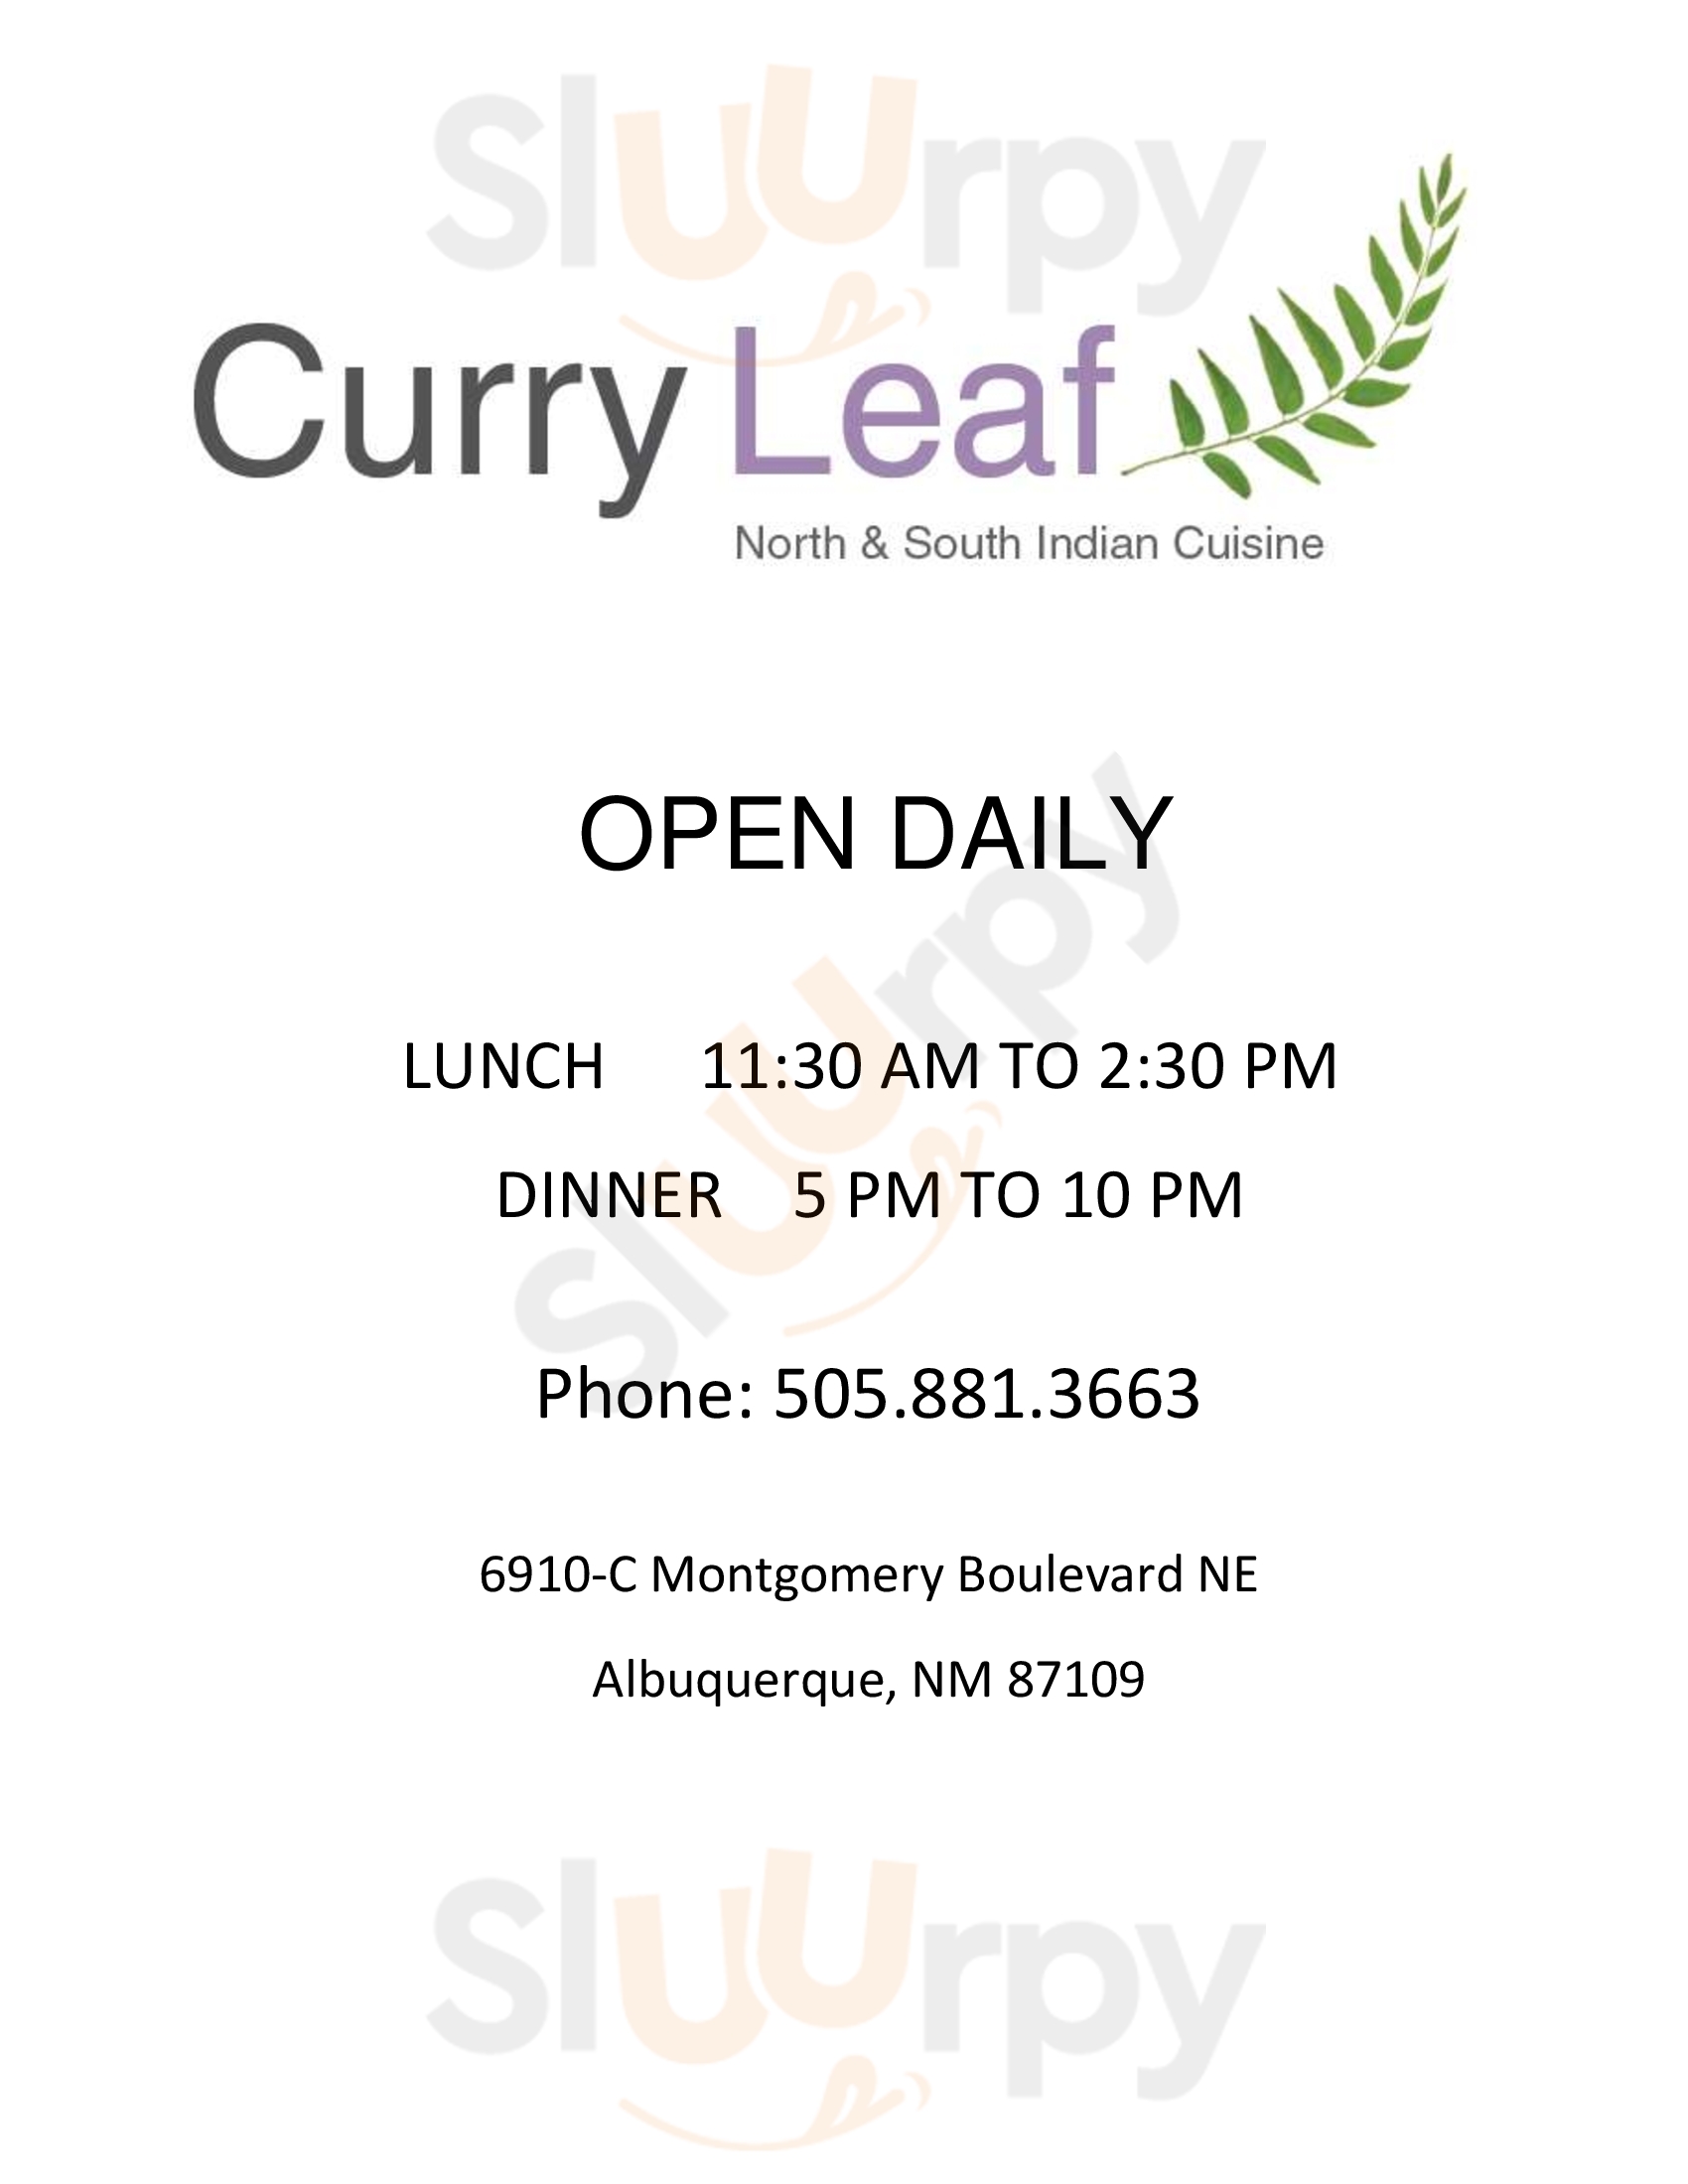 Curry Leaf Indian Restaurant Albuquerque Menu - 1